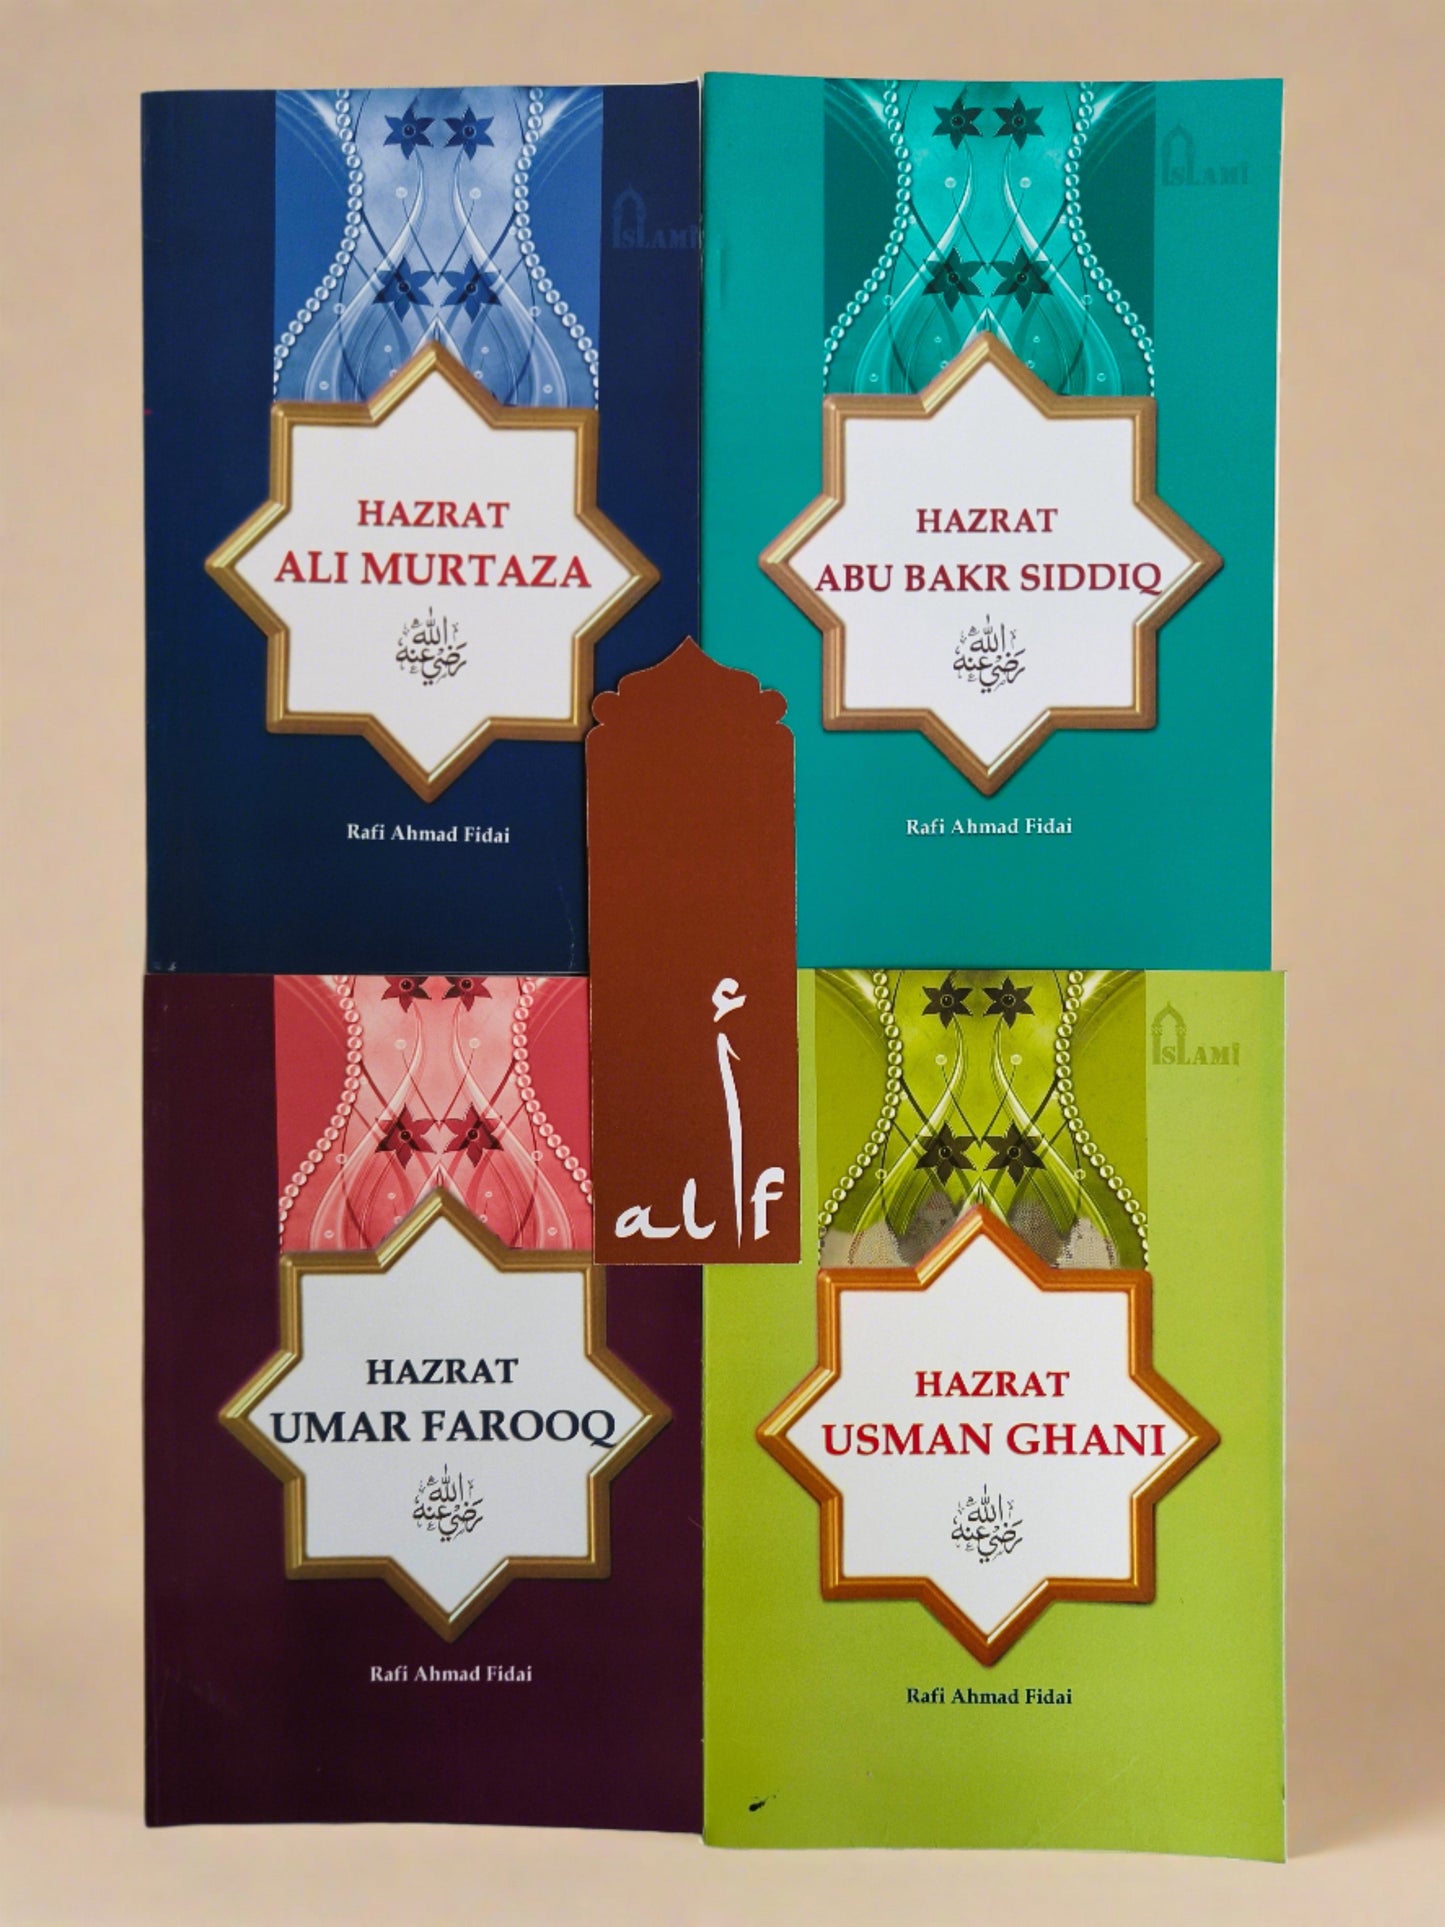 4 Caliphs - alifthebookstore